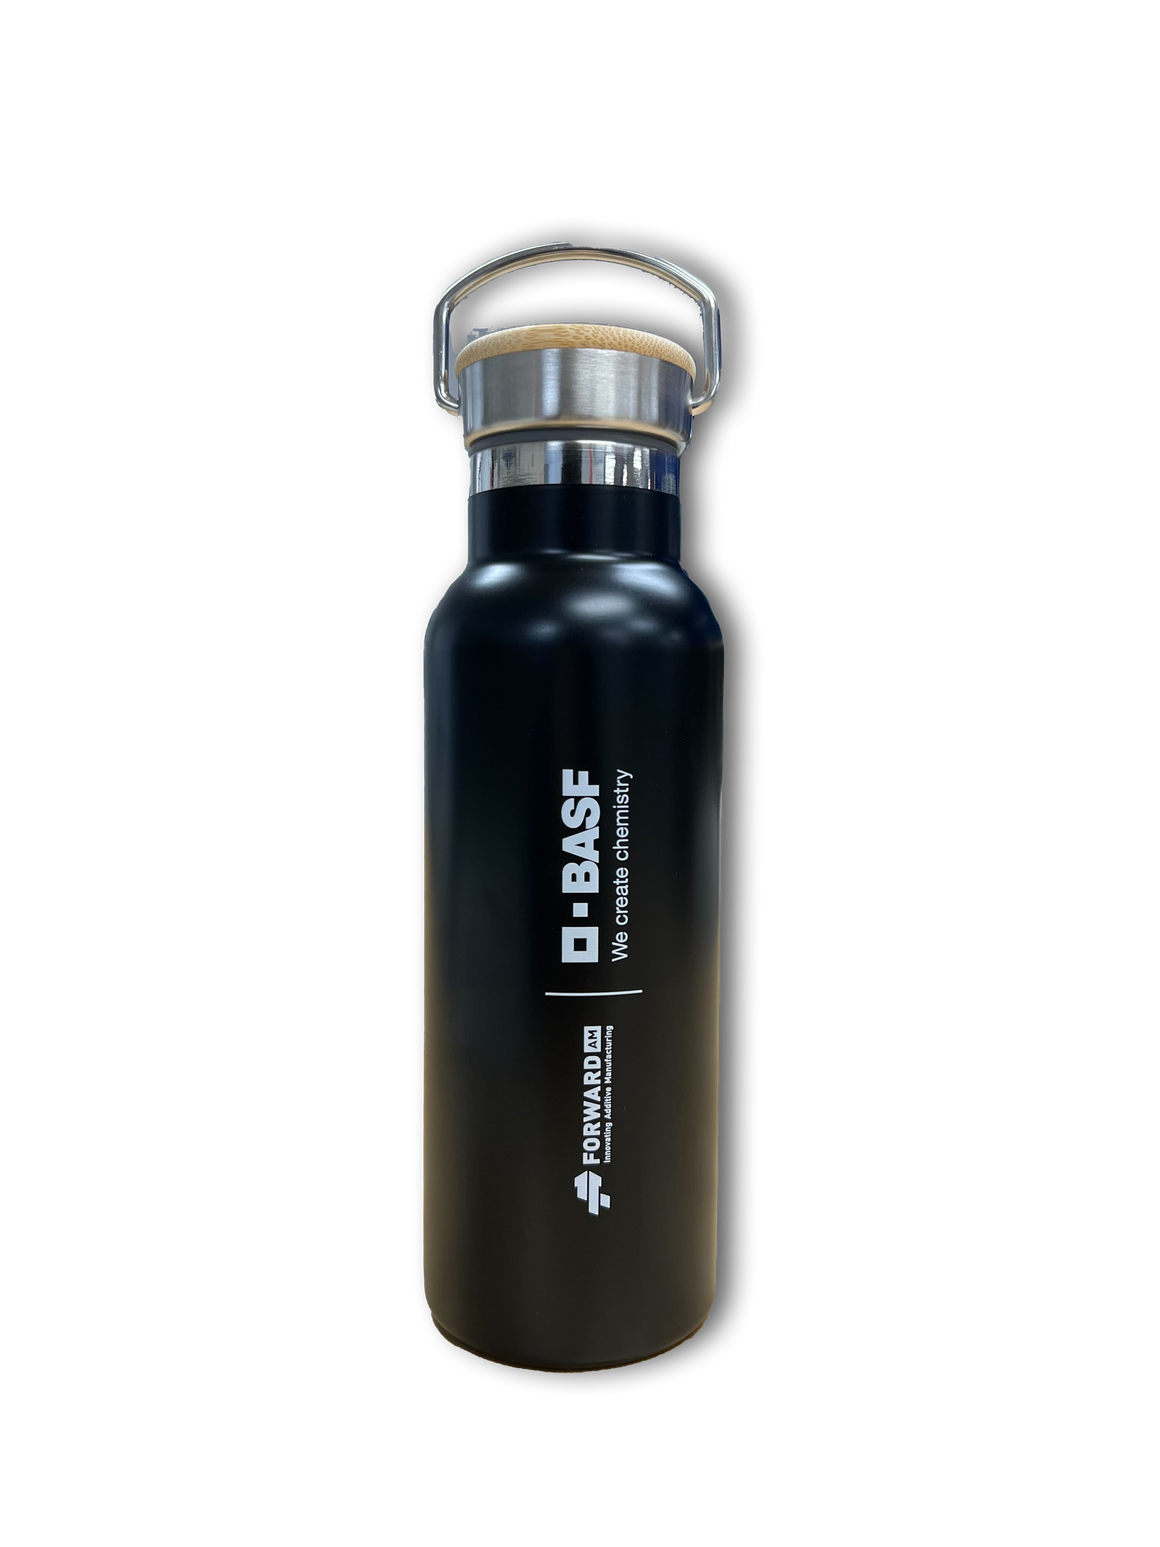 BASF Forward AM Water Bottle - Rewards